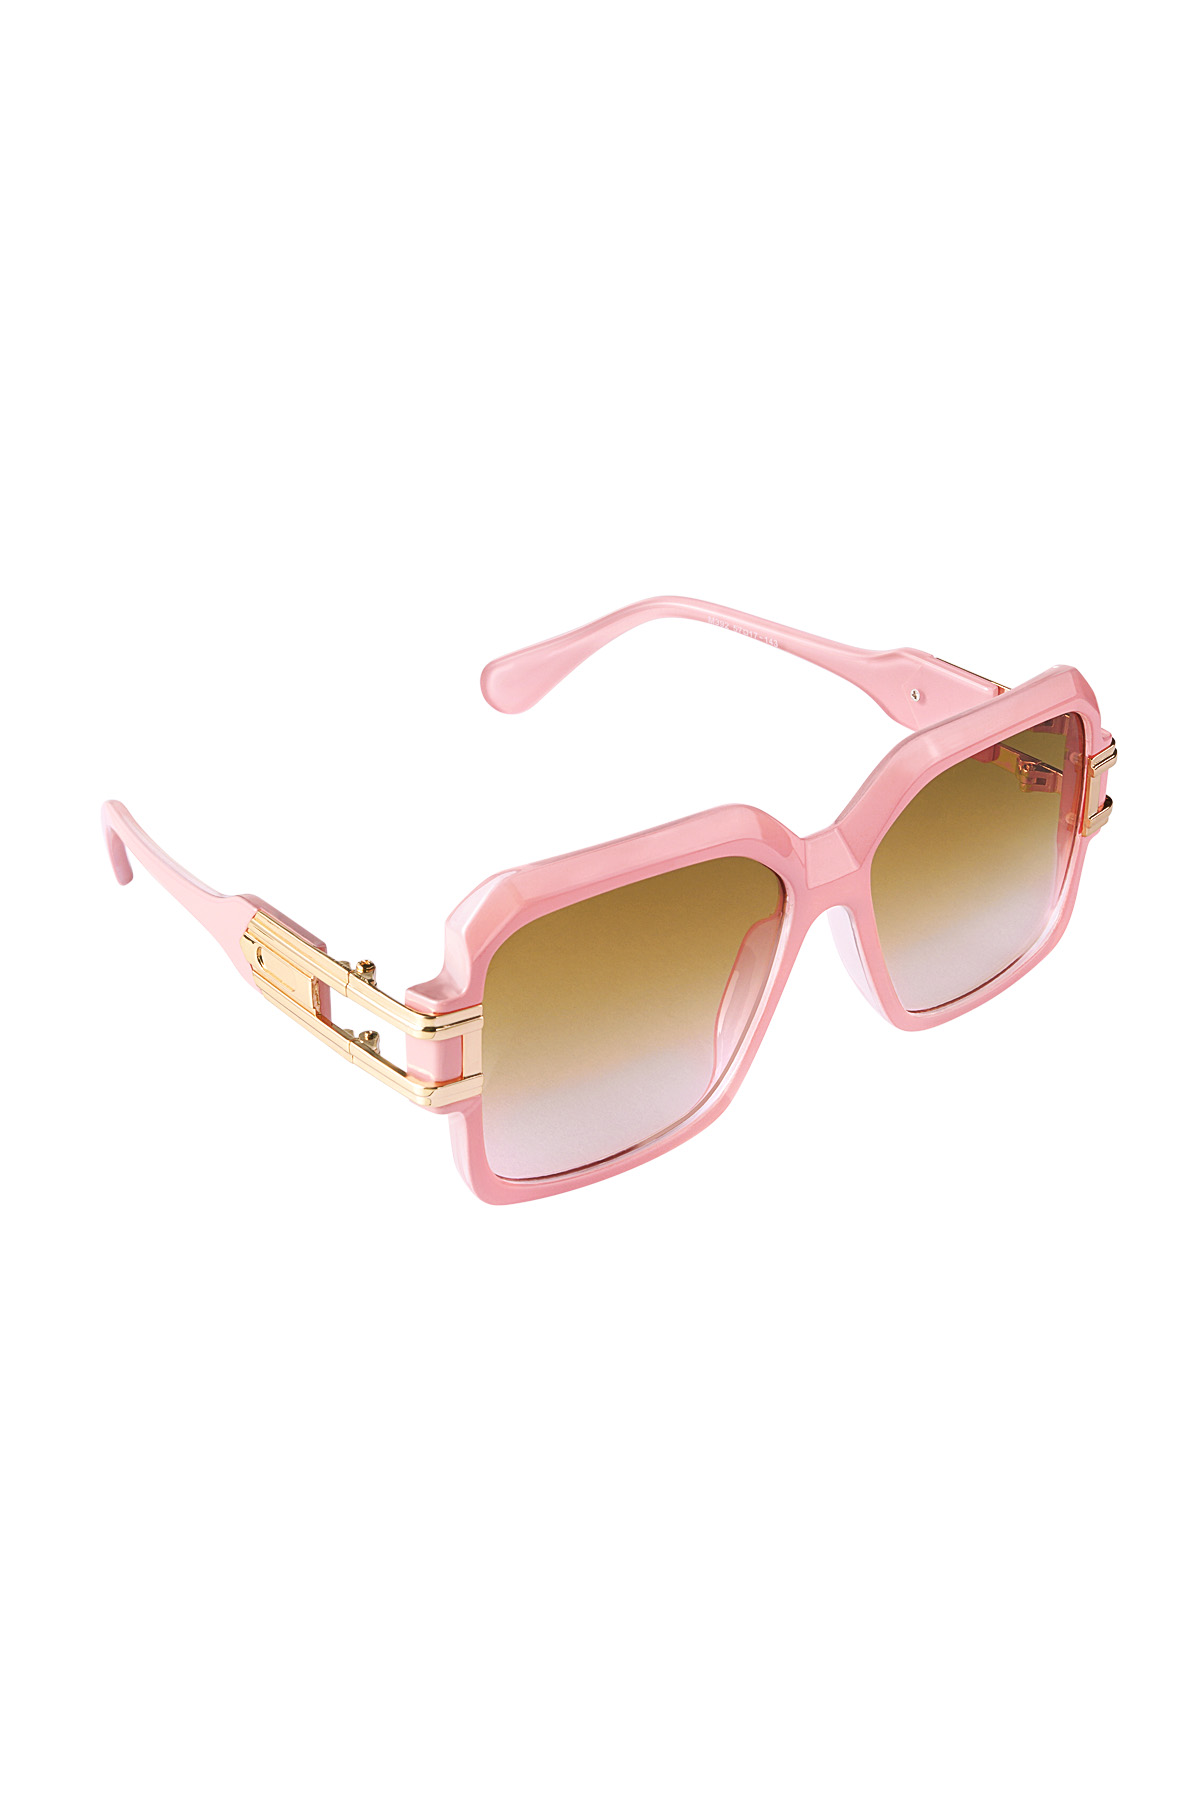 Coole Sonnenbrille mit Rahmen – rosa